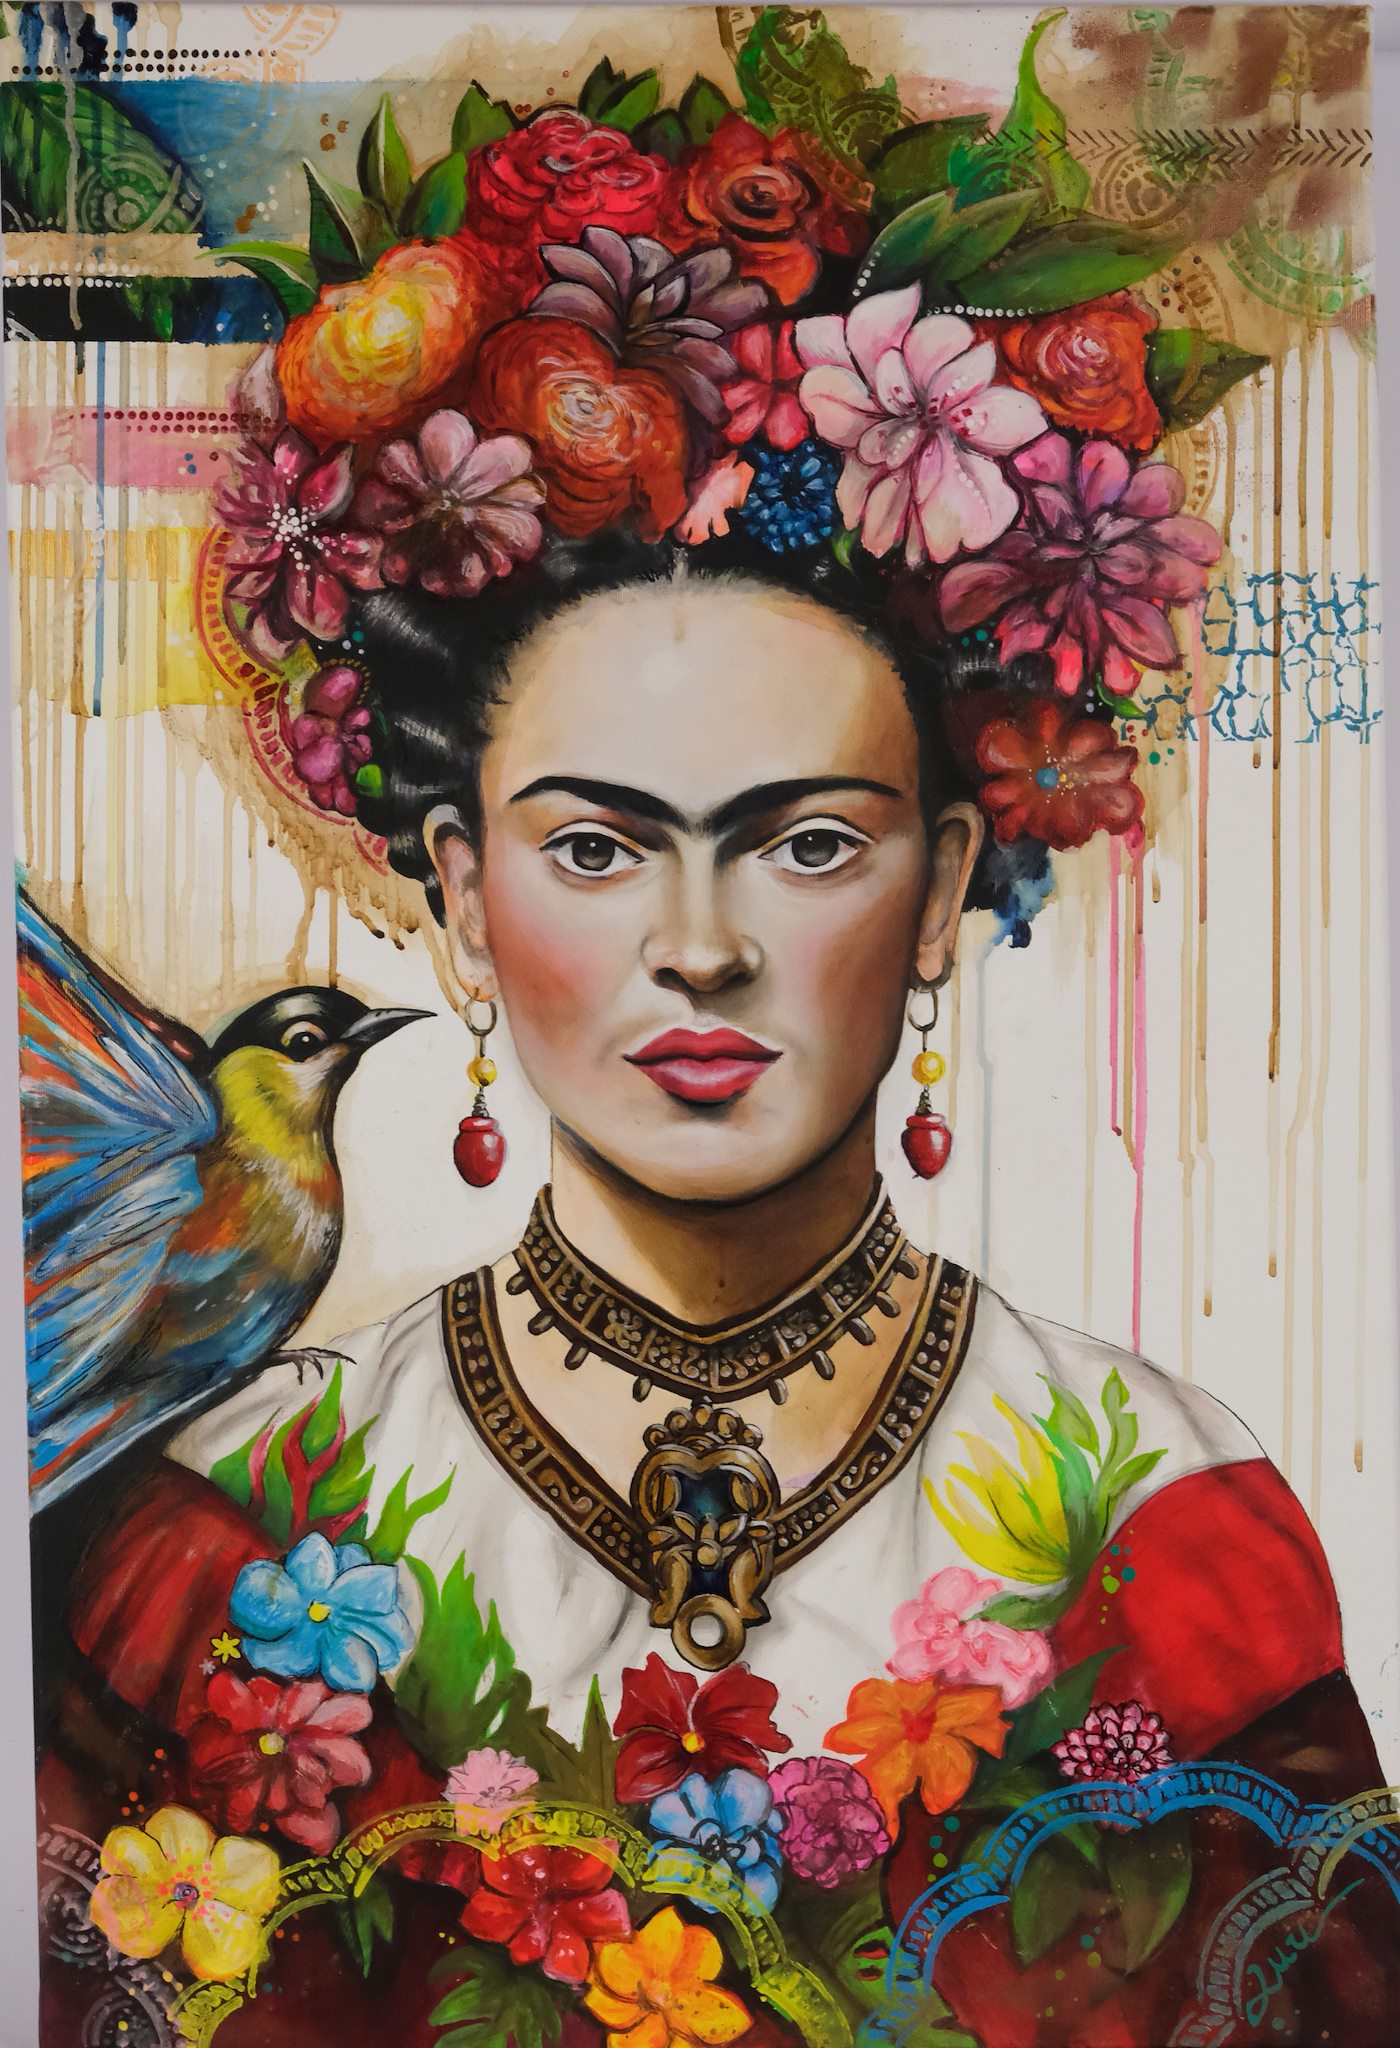 Luu Šmídová - Frida